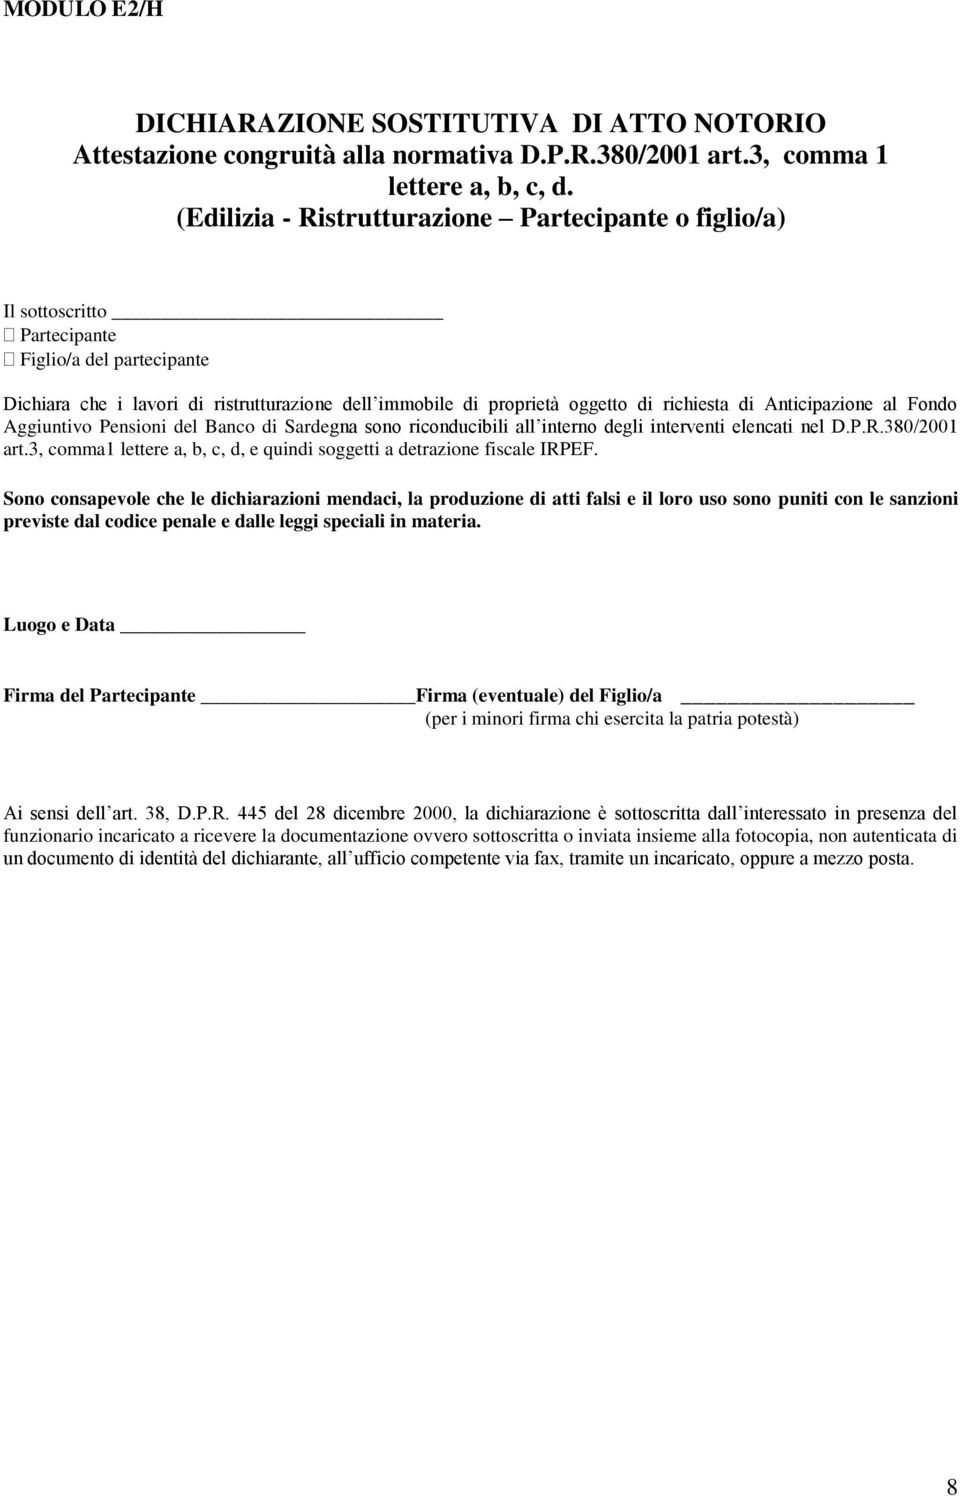 di Anticipazione al Fondo Aggiuntivo Pensioni del Banco di Sardegna sono riconducibili all interno degli interventi elencati nel D.P.R.380/2001 art.